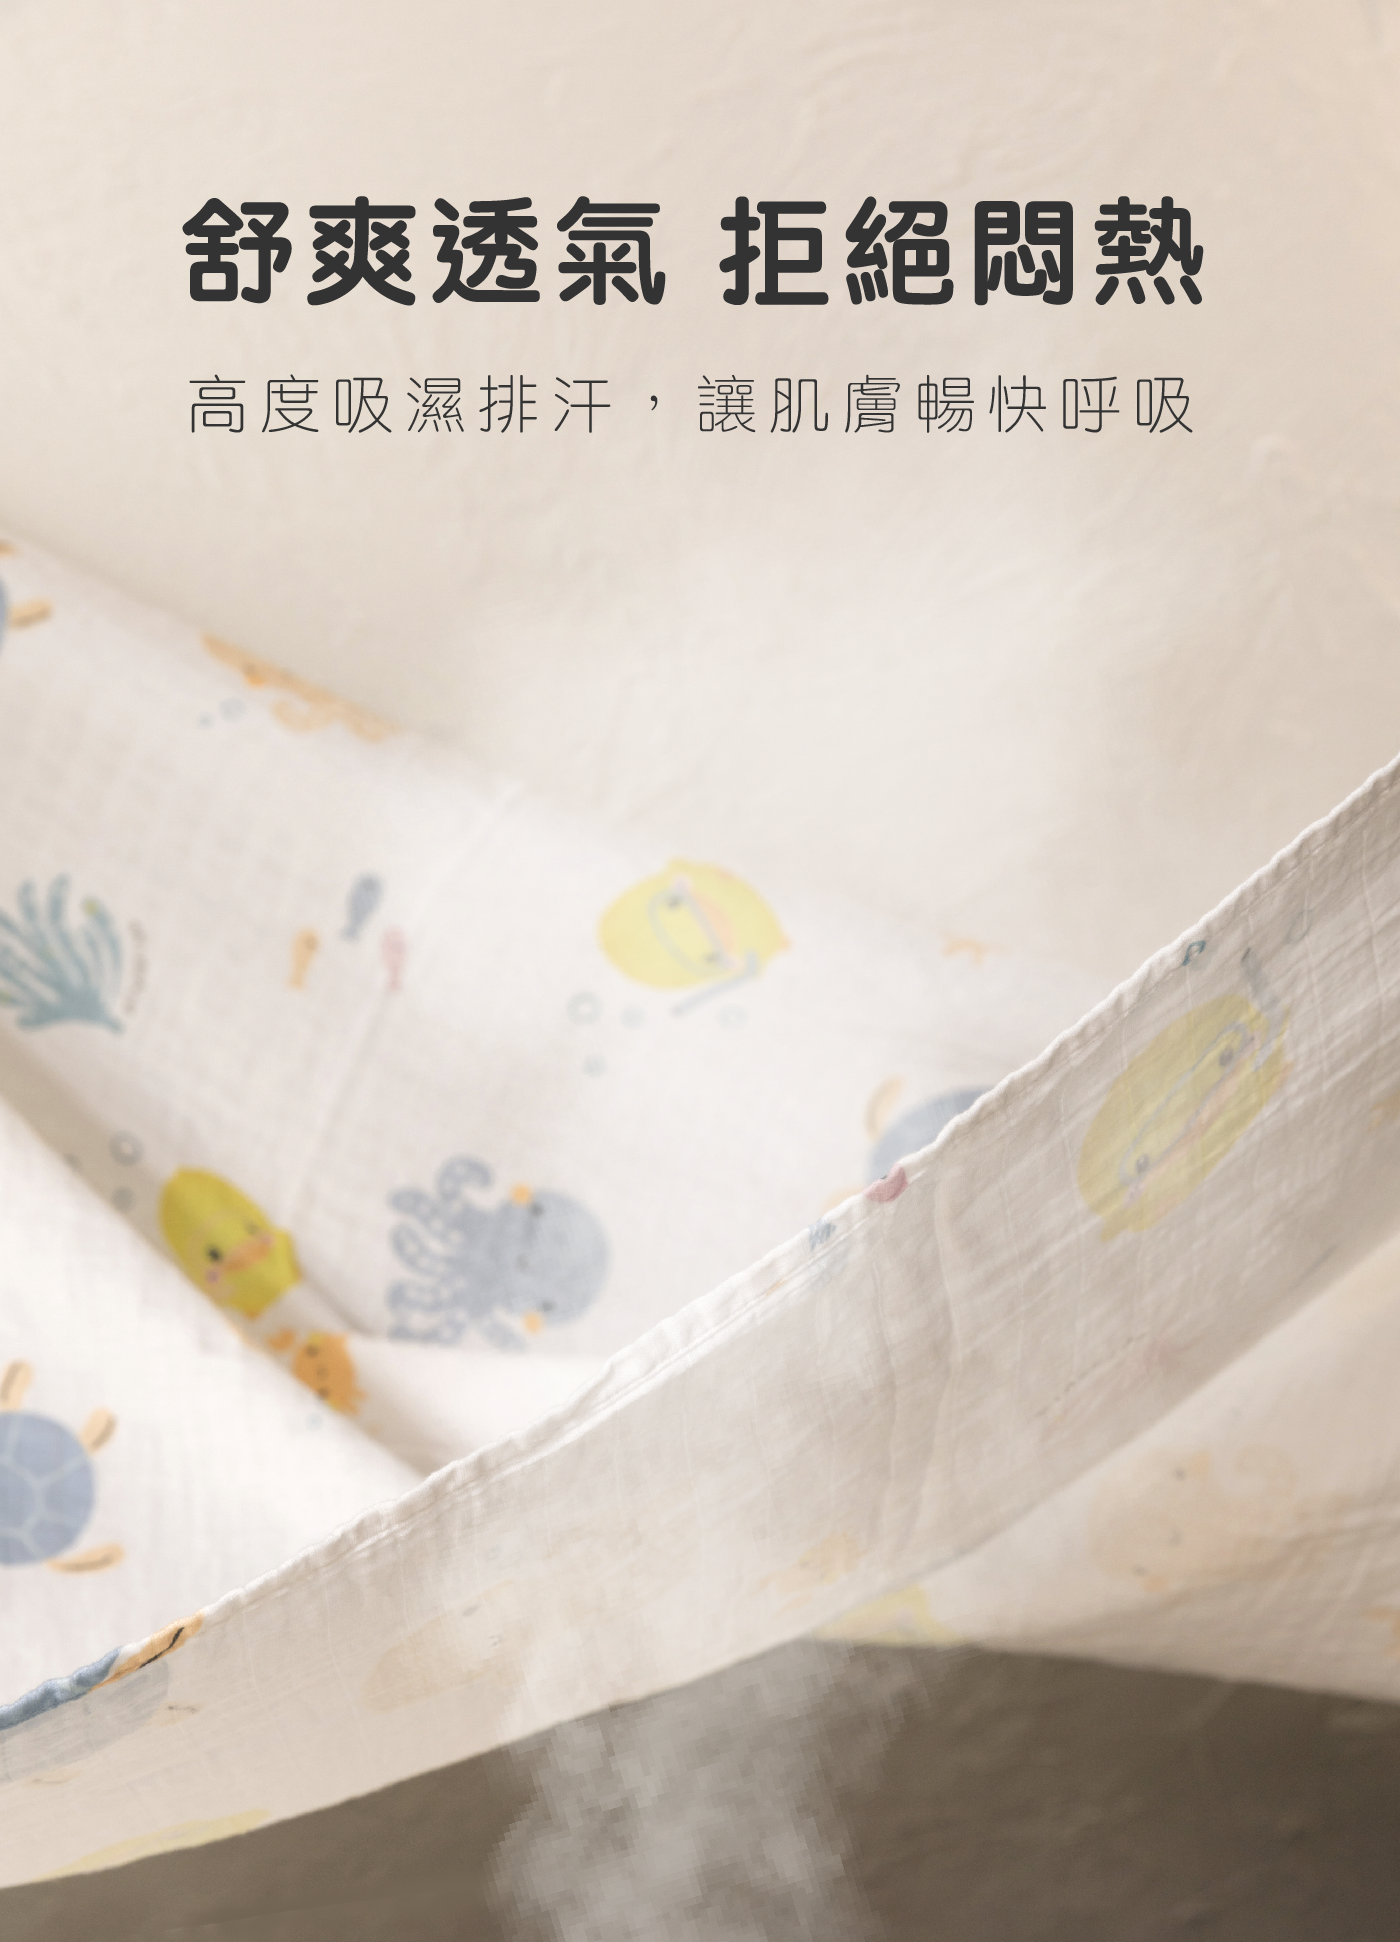 新上市棉品_產品活動頁16